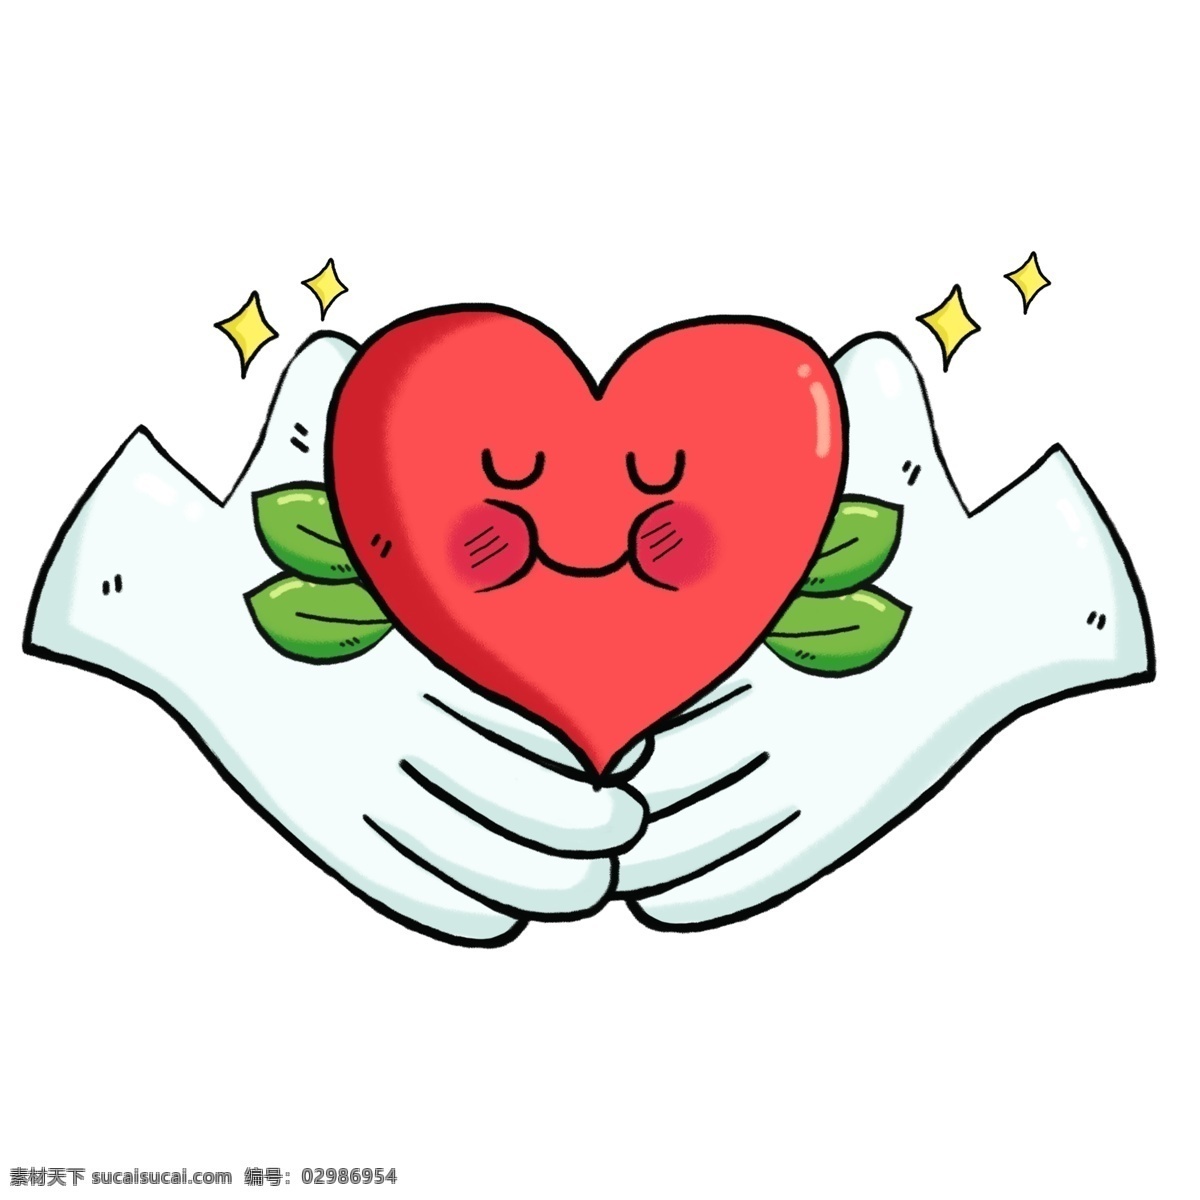 世界 保健 日 保护 心脏 健康 手绘 卡通 心 世界保健日 医学 保护心脏 效果元素